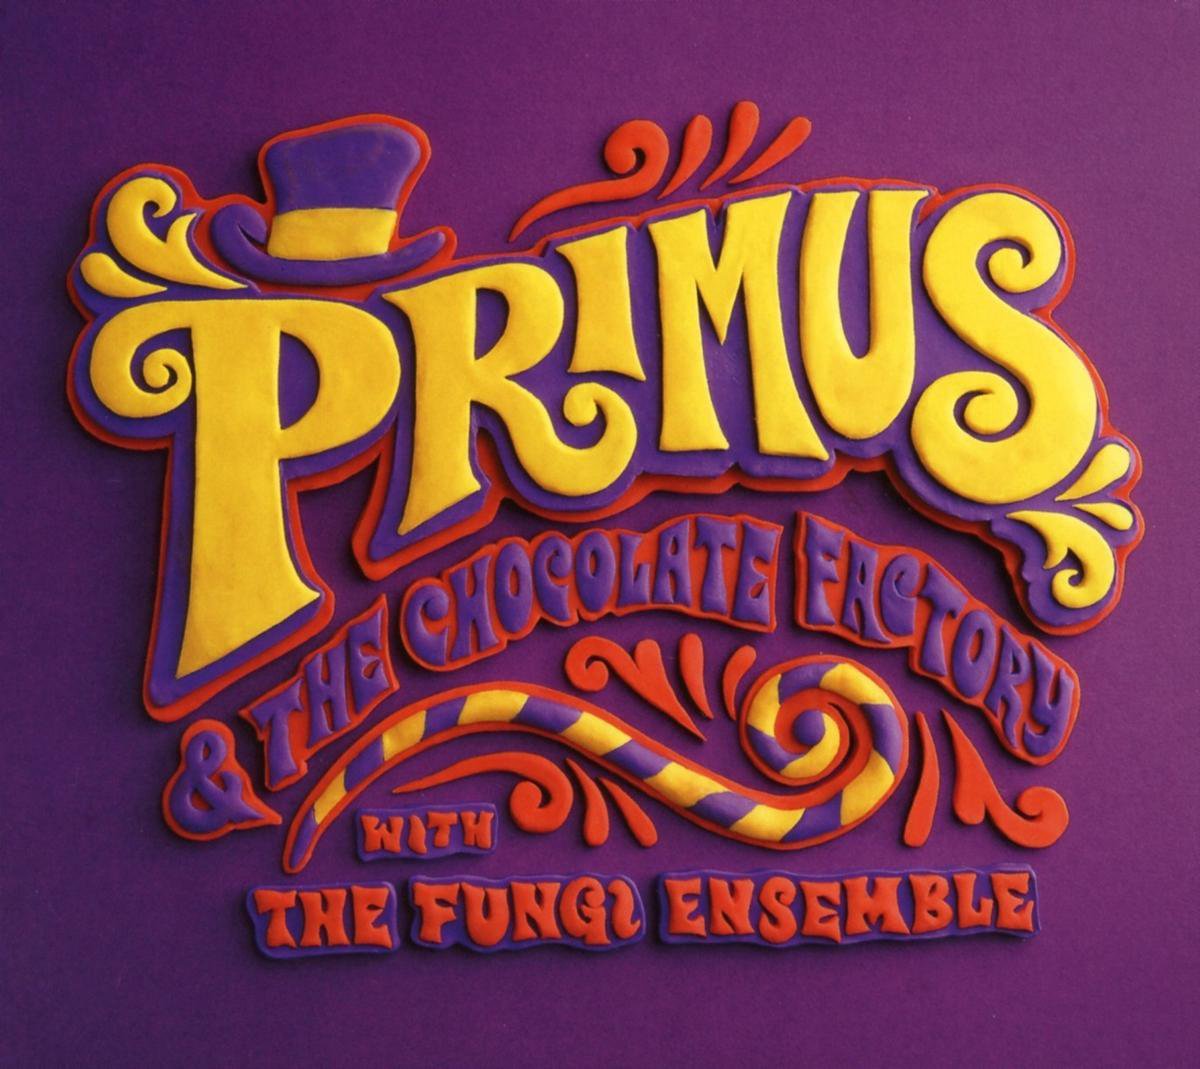 primus and the chocolate factory full album